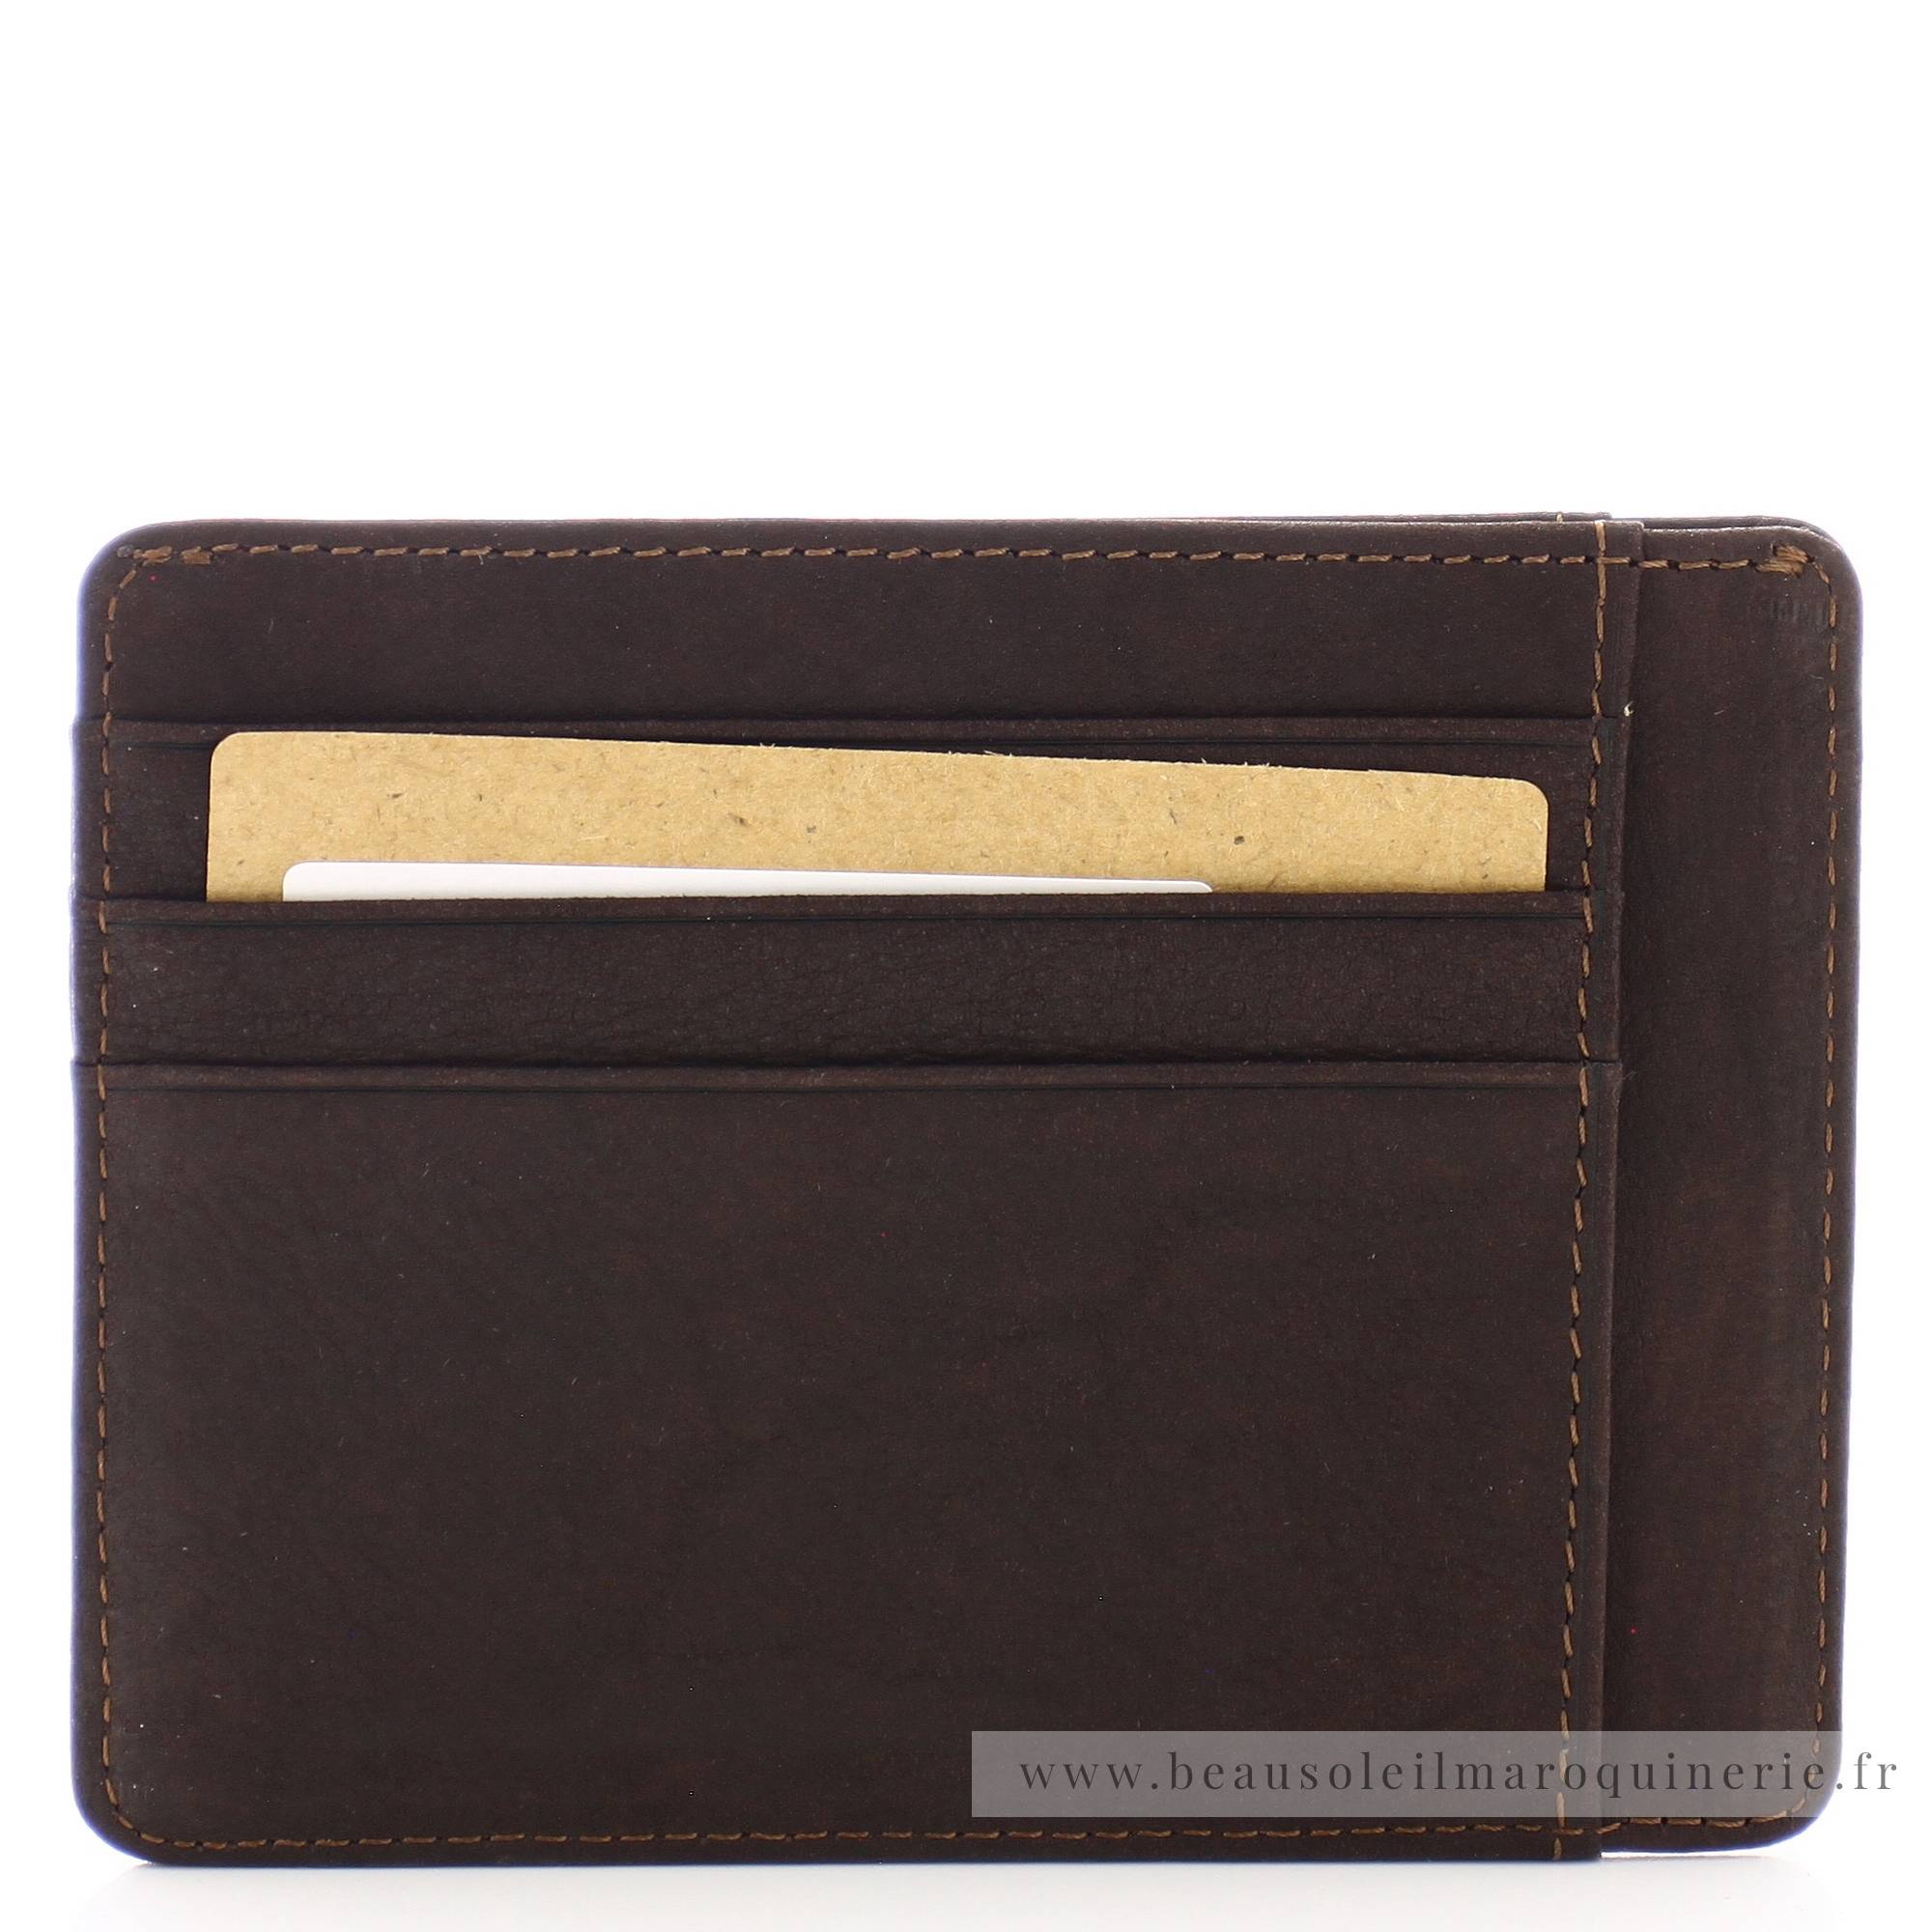 Porte cartes Arthur Aston Louis format mini cuir 94-147C couleur châtaigne, vue de dos